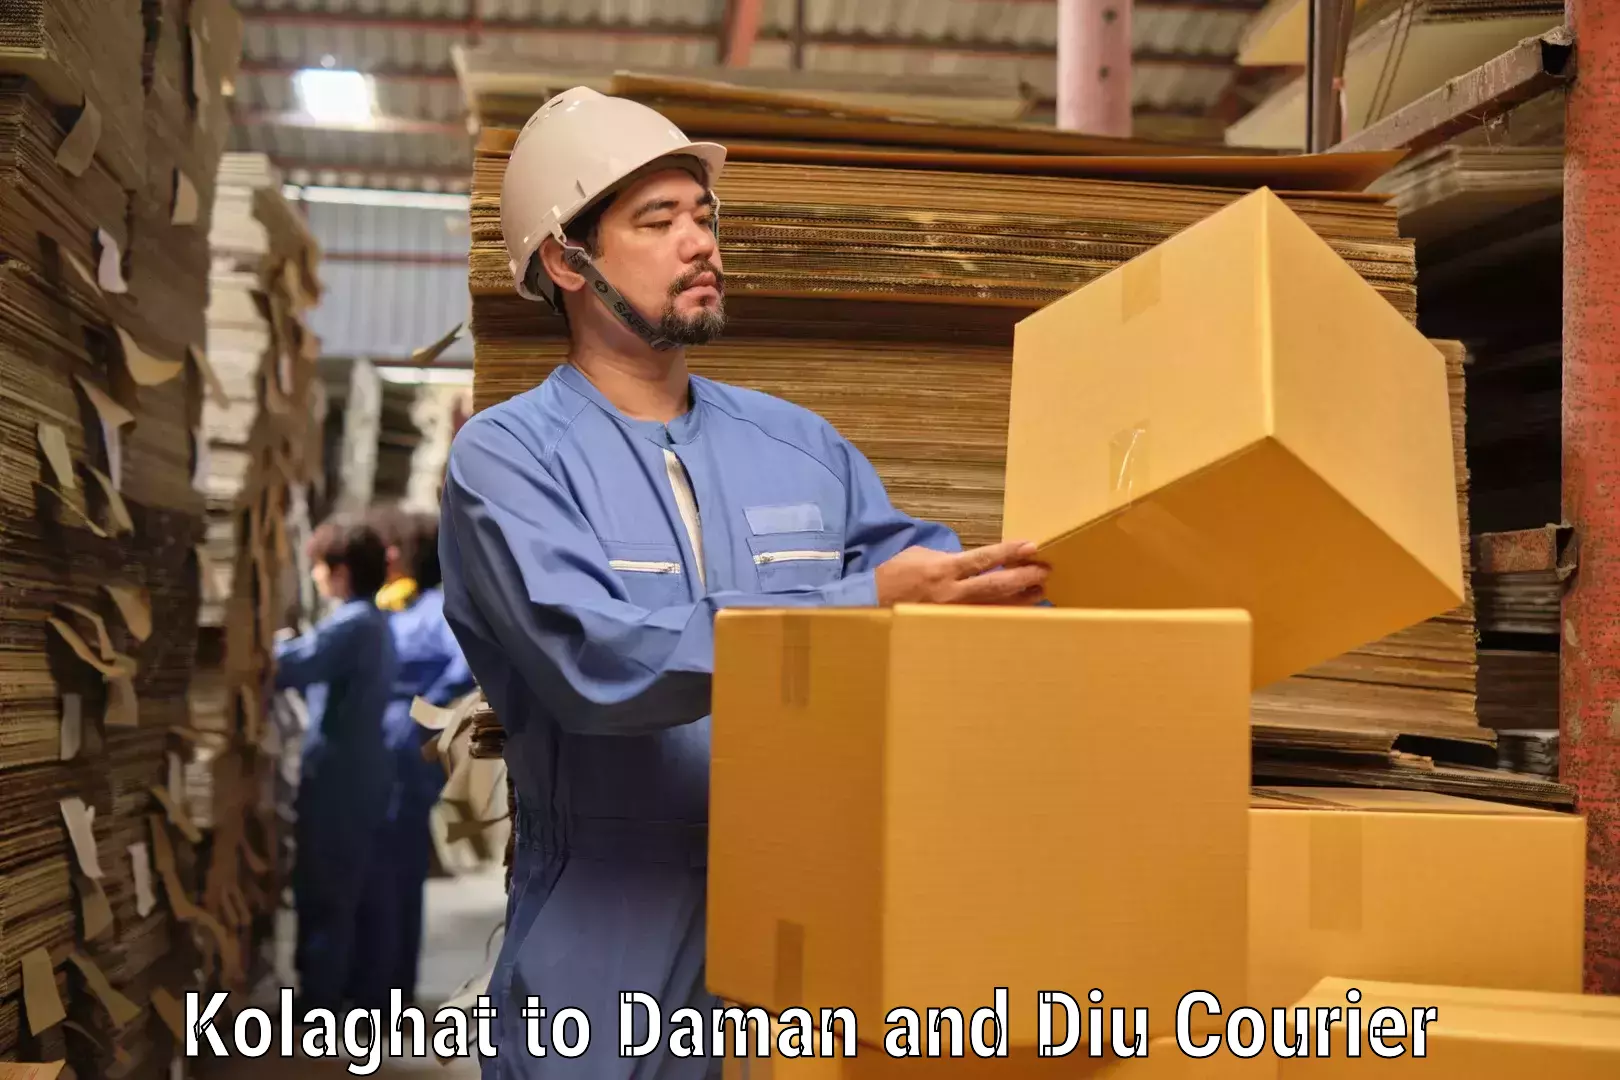 High-performance logistics Kolaghat to Daman and Diu